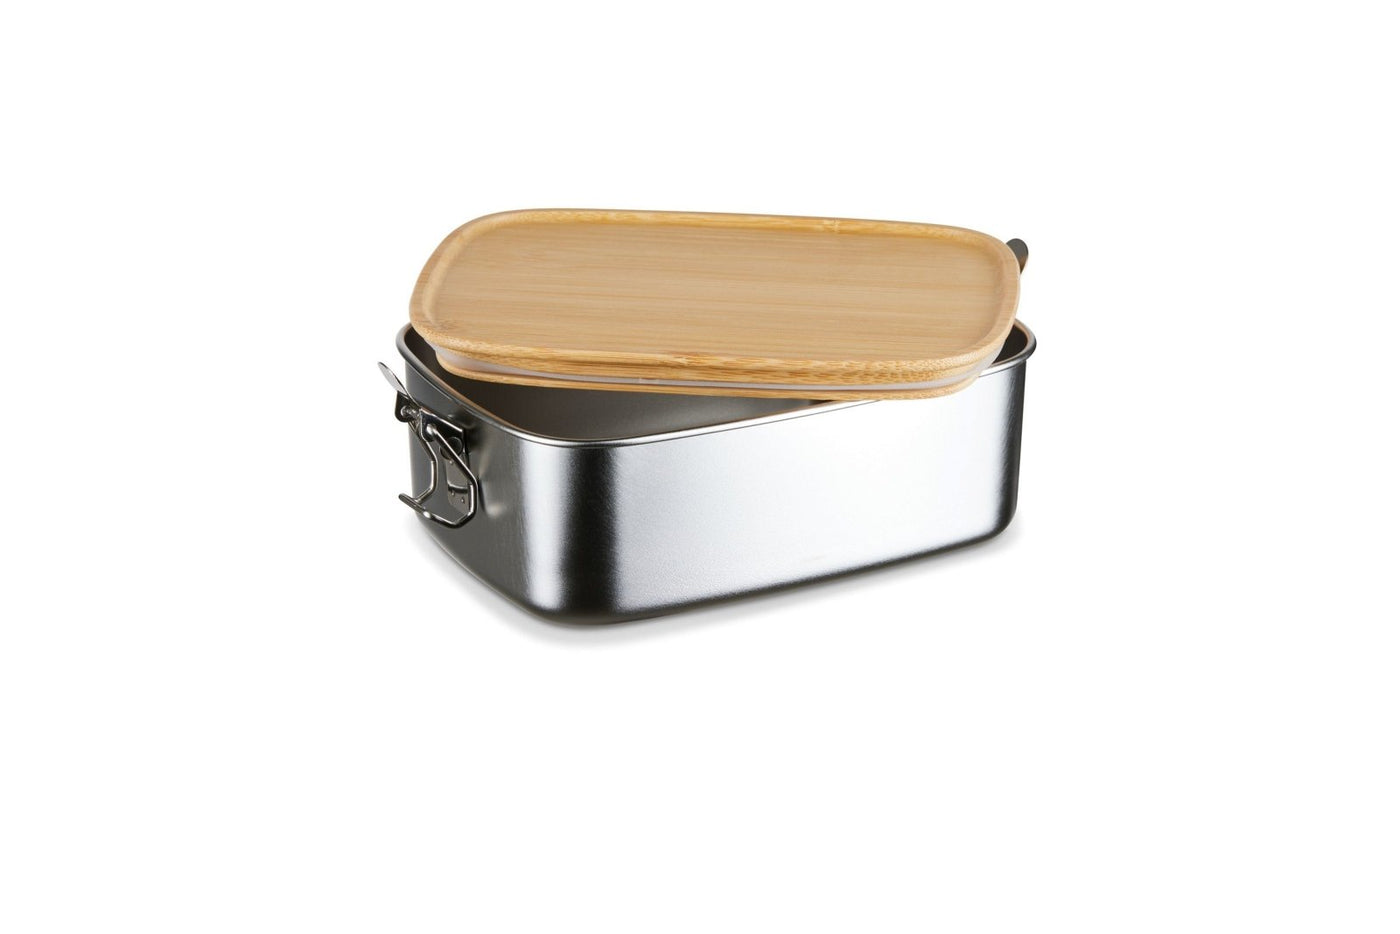 Bild: Brotdose - Einhorn - Edelstahl mit Bambusdeckel Geschenkidee